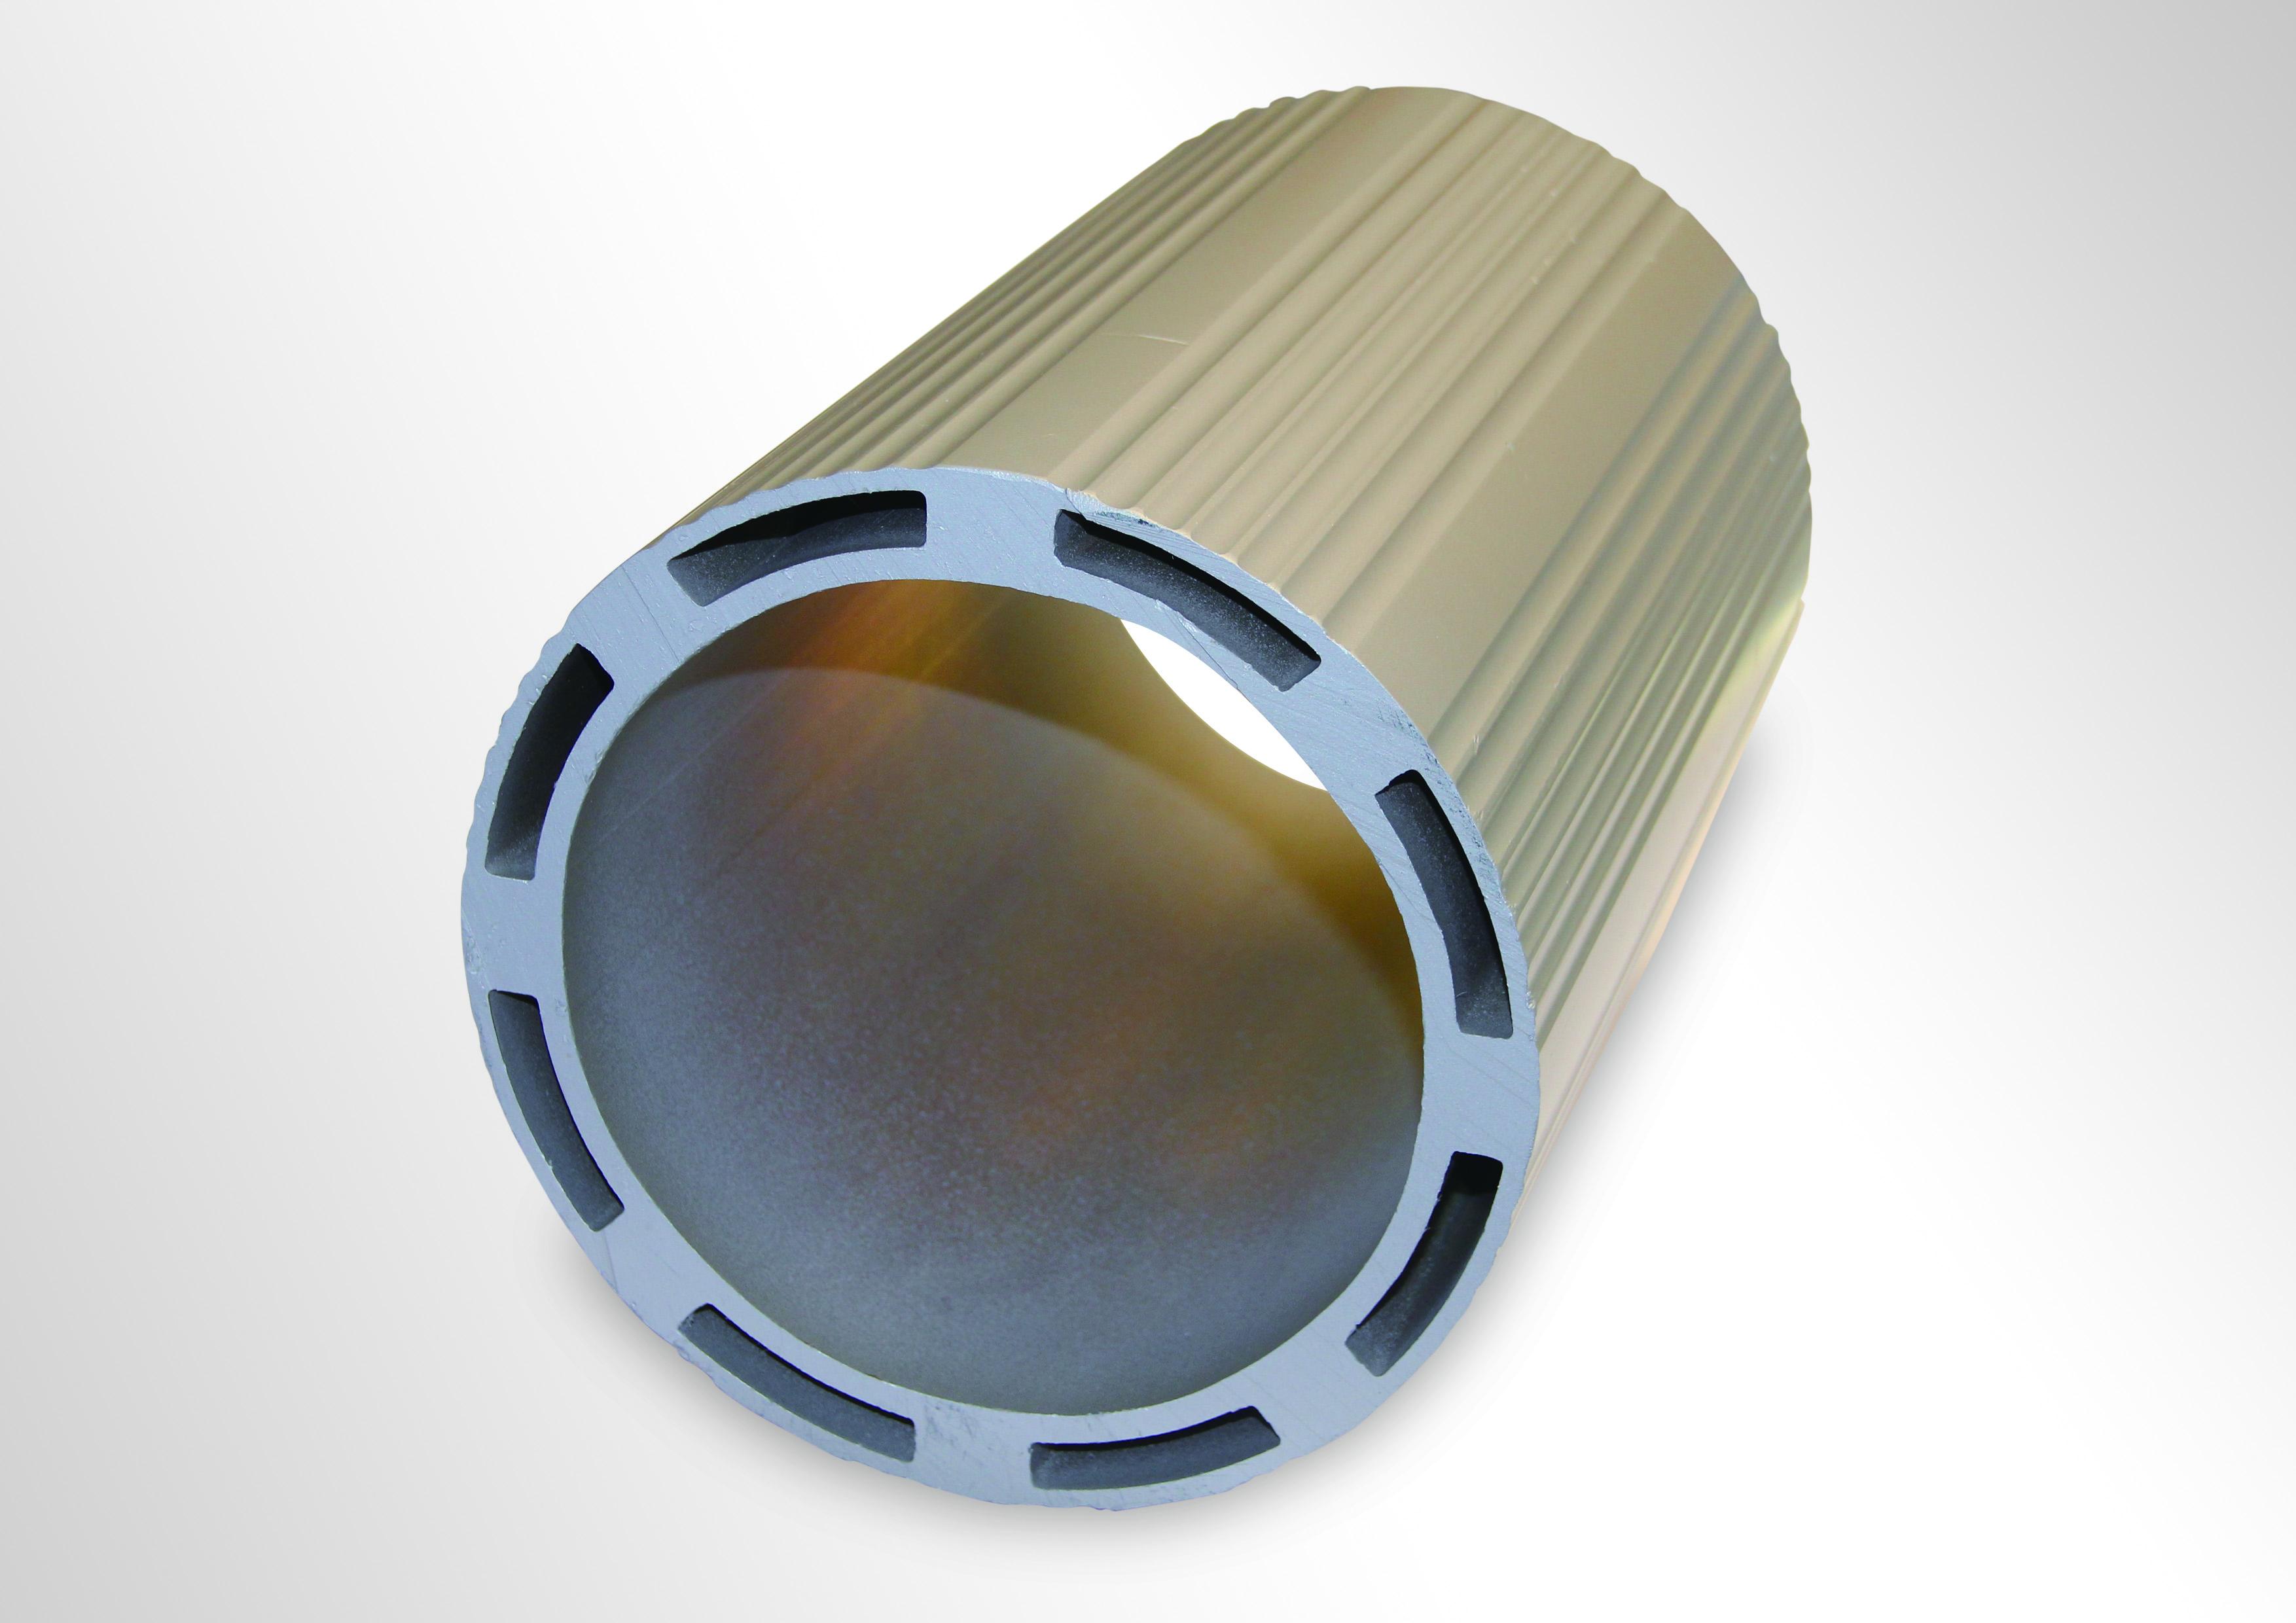 兴发铝业直销 电机外壳铝型材 价格电议 品质保证 个性化定制